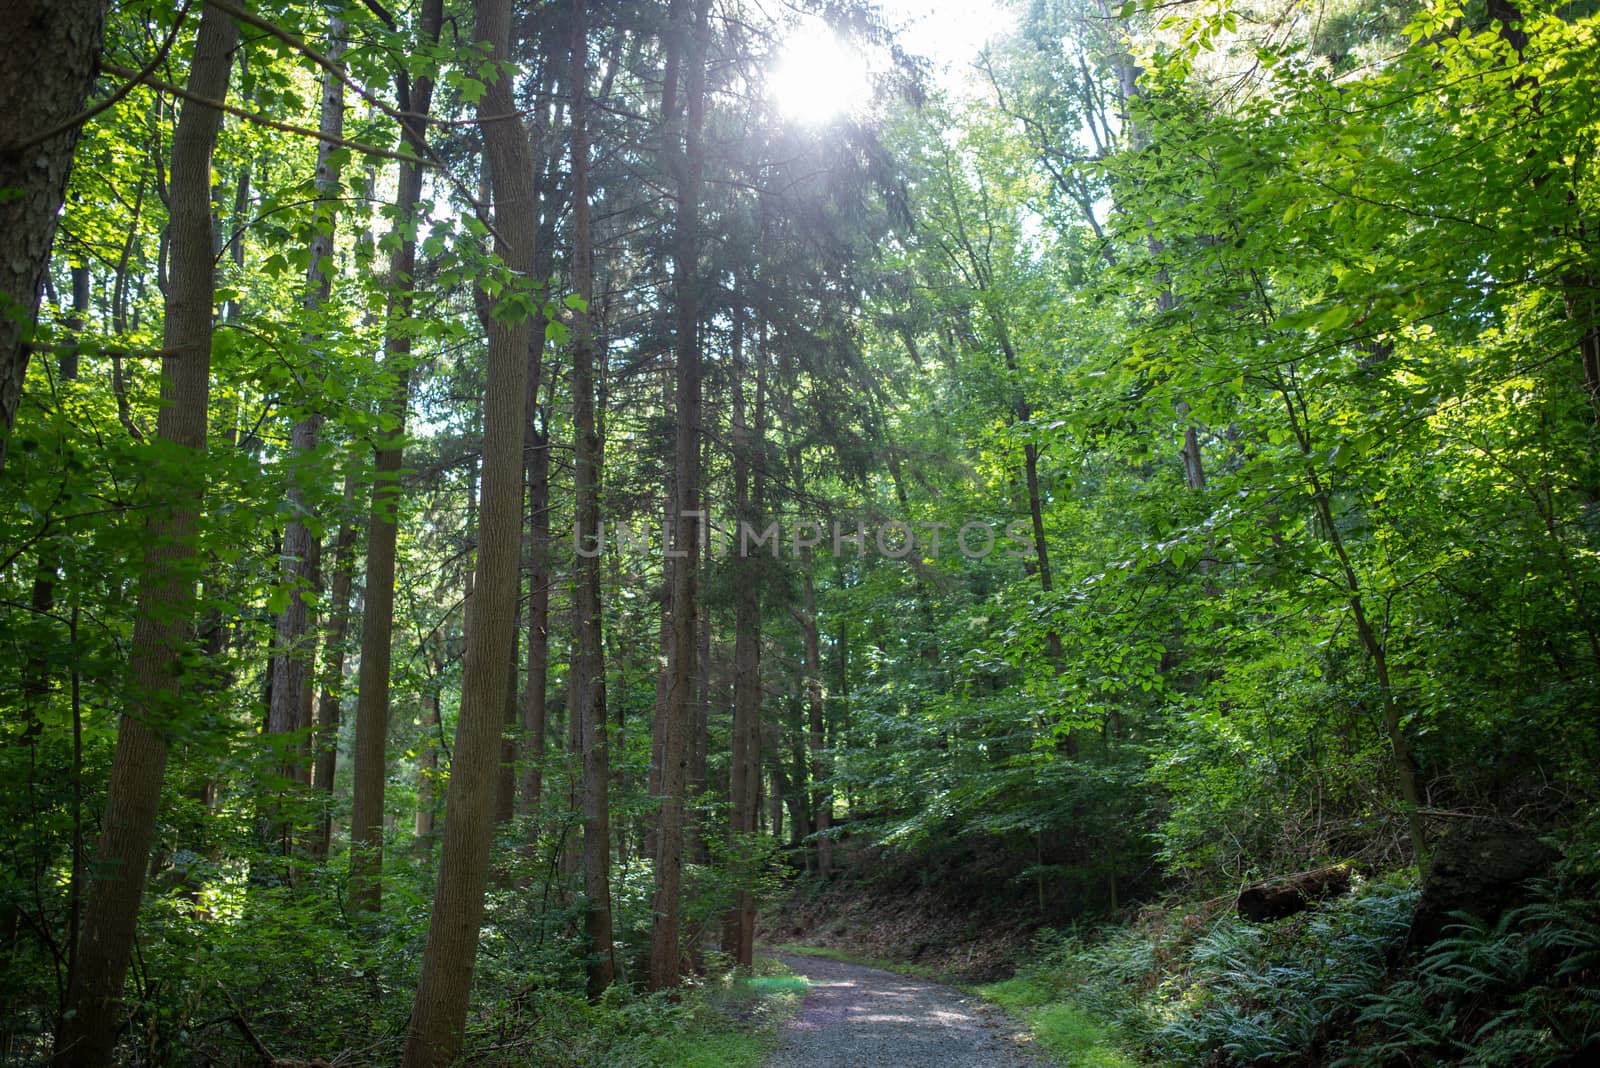 Path through tall woodland trees by marysalen